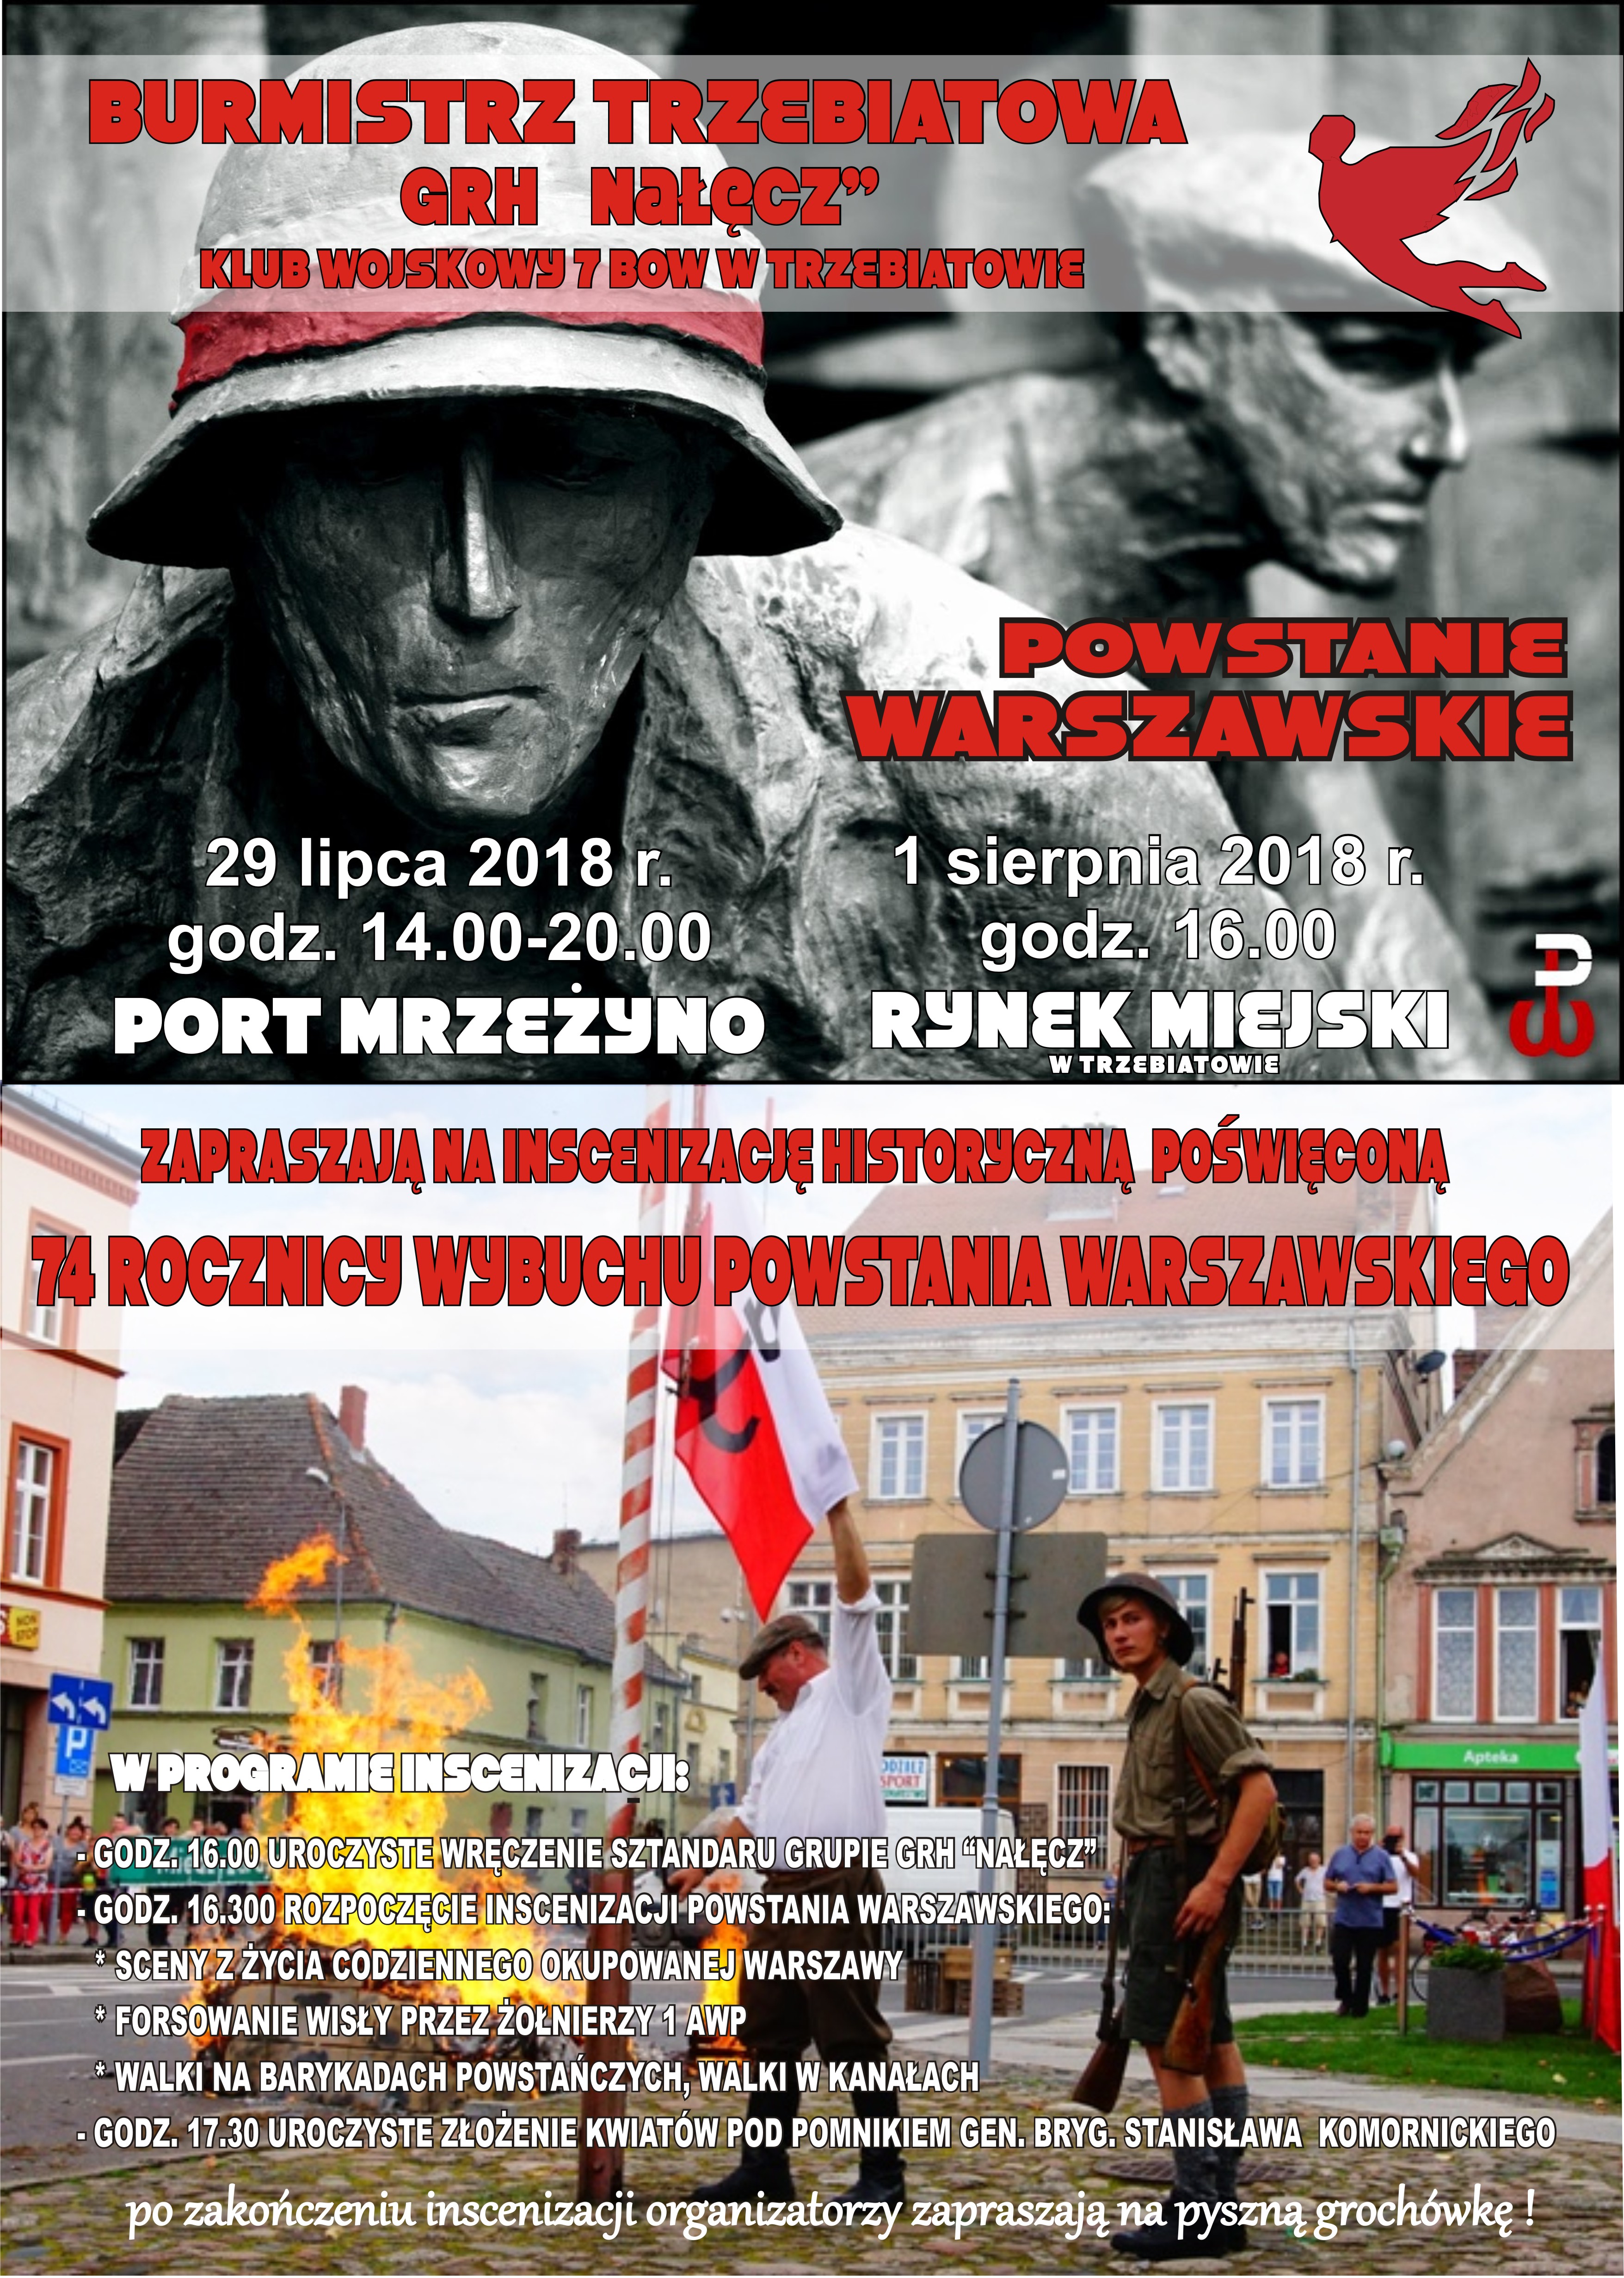 inscenizacja historyczna w Trzebiatowie, lipiec 2018